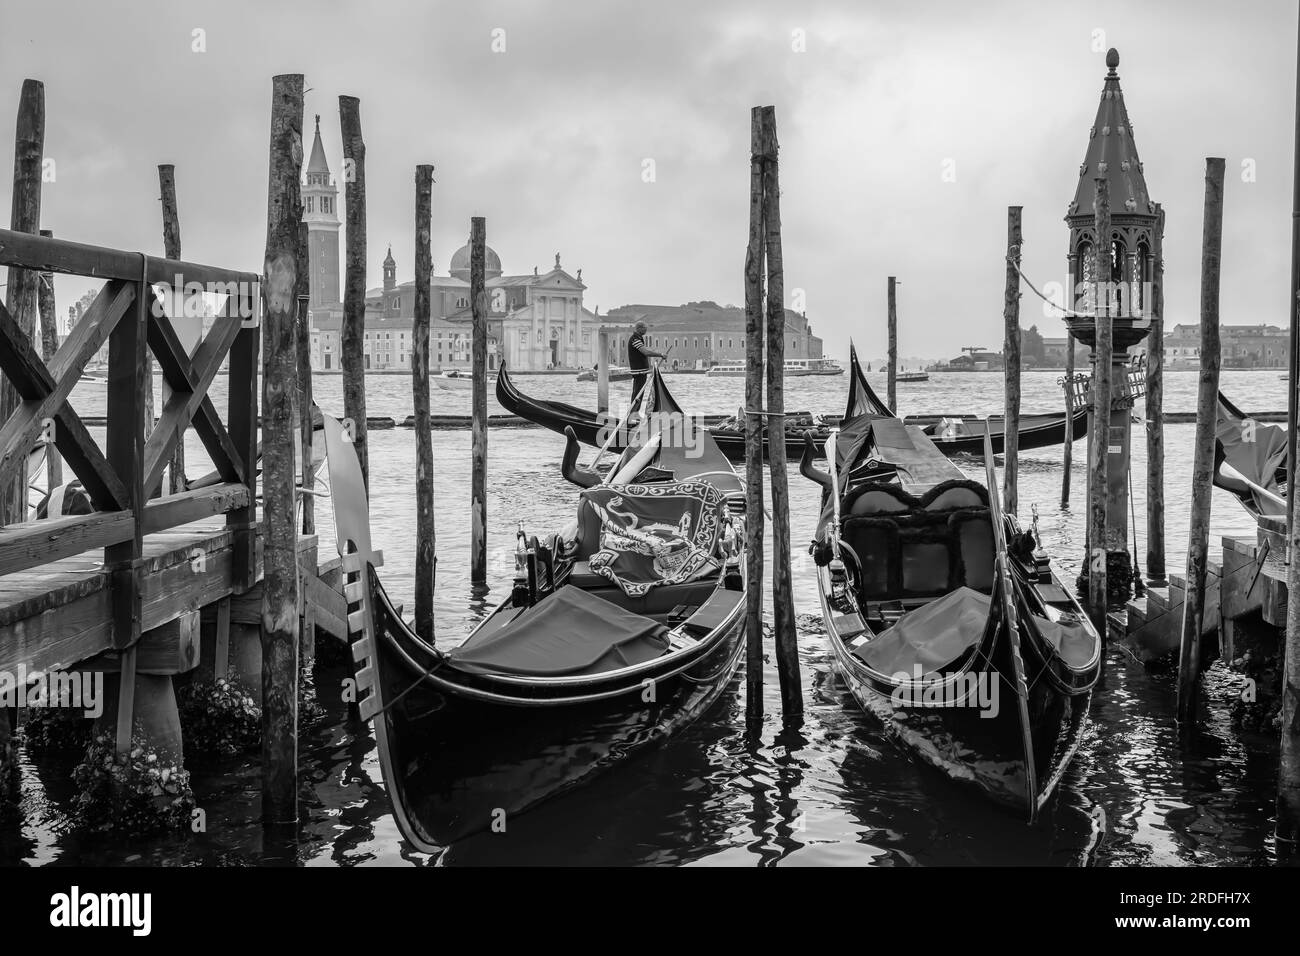 Venise, Italie - 27 avril 2019 : Une jetée en bois avec une lanterne, des gondoles, et un gondolier passant en arrière-plan à Venise Italie en noir et blanc Banque D'Images